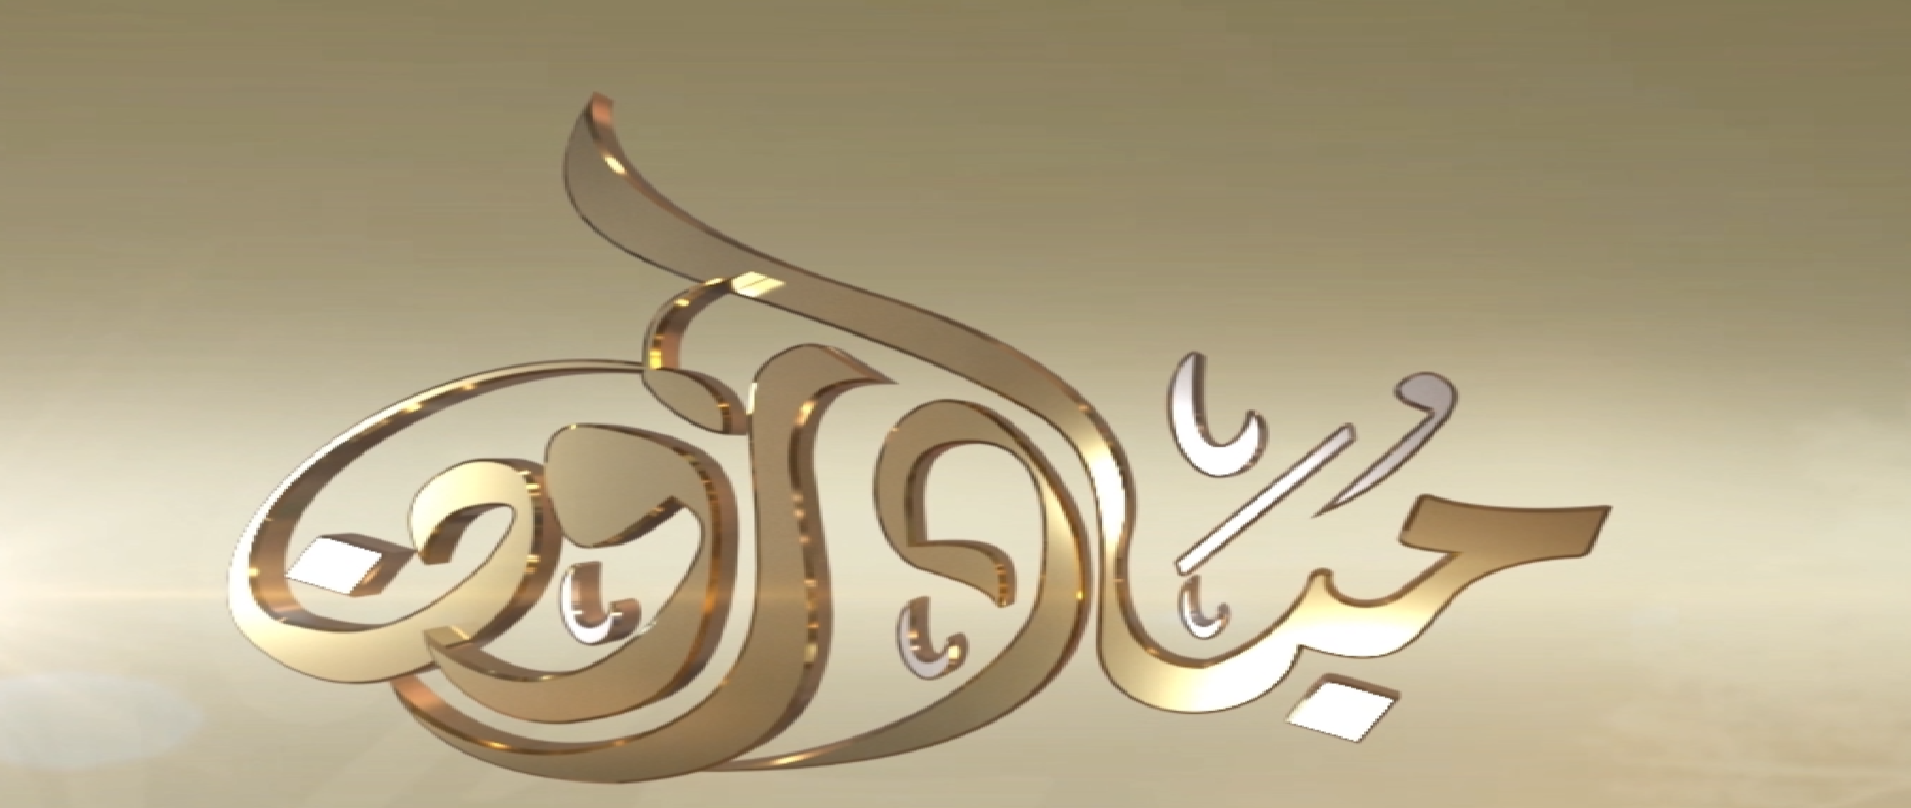 شاهد : برنامج مبادرون من قناه سبأ بتاريخ 10/رمضان/1441
